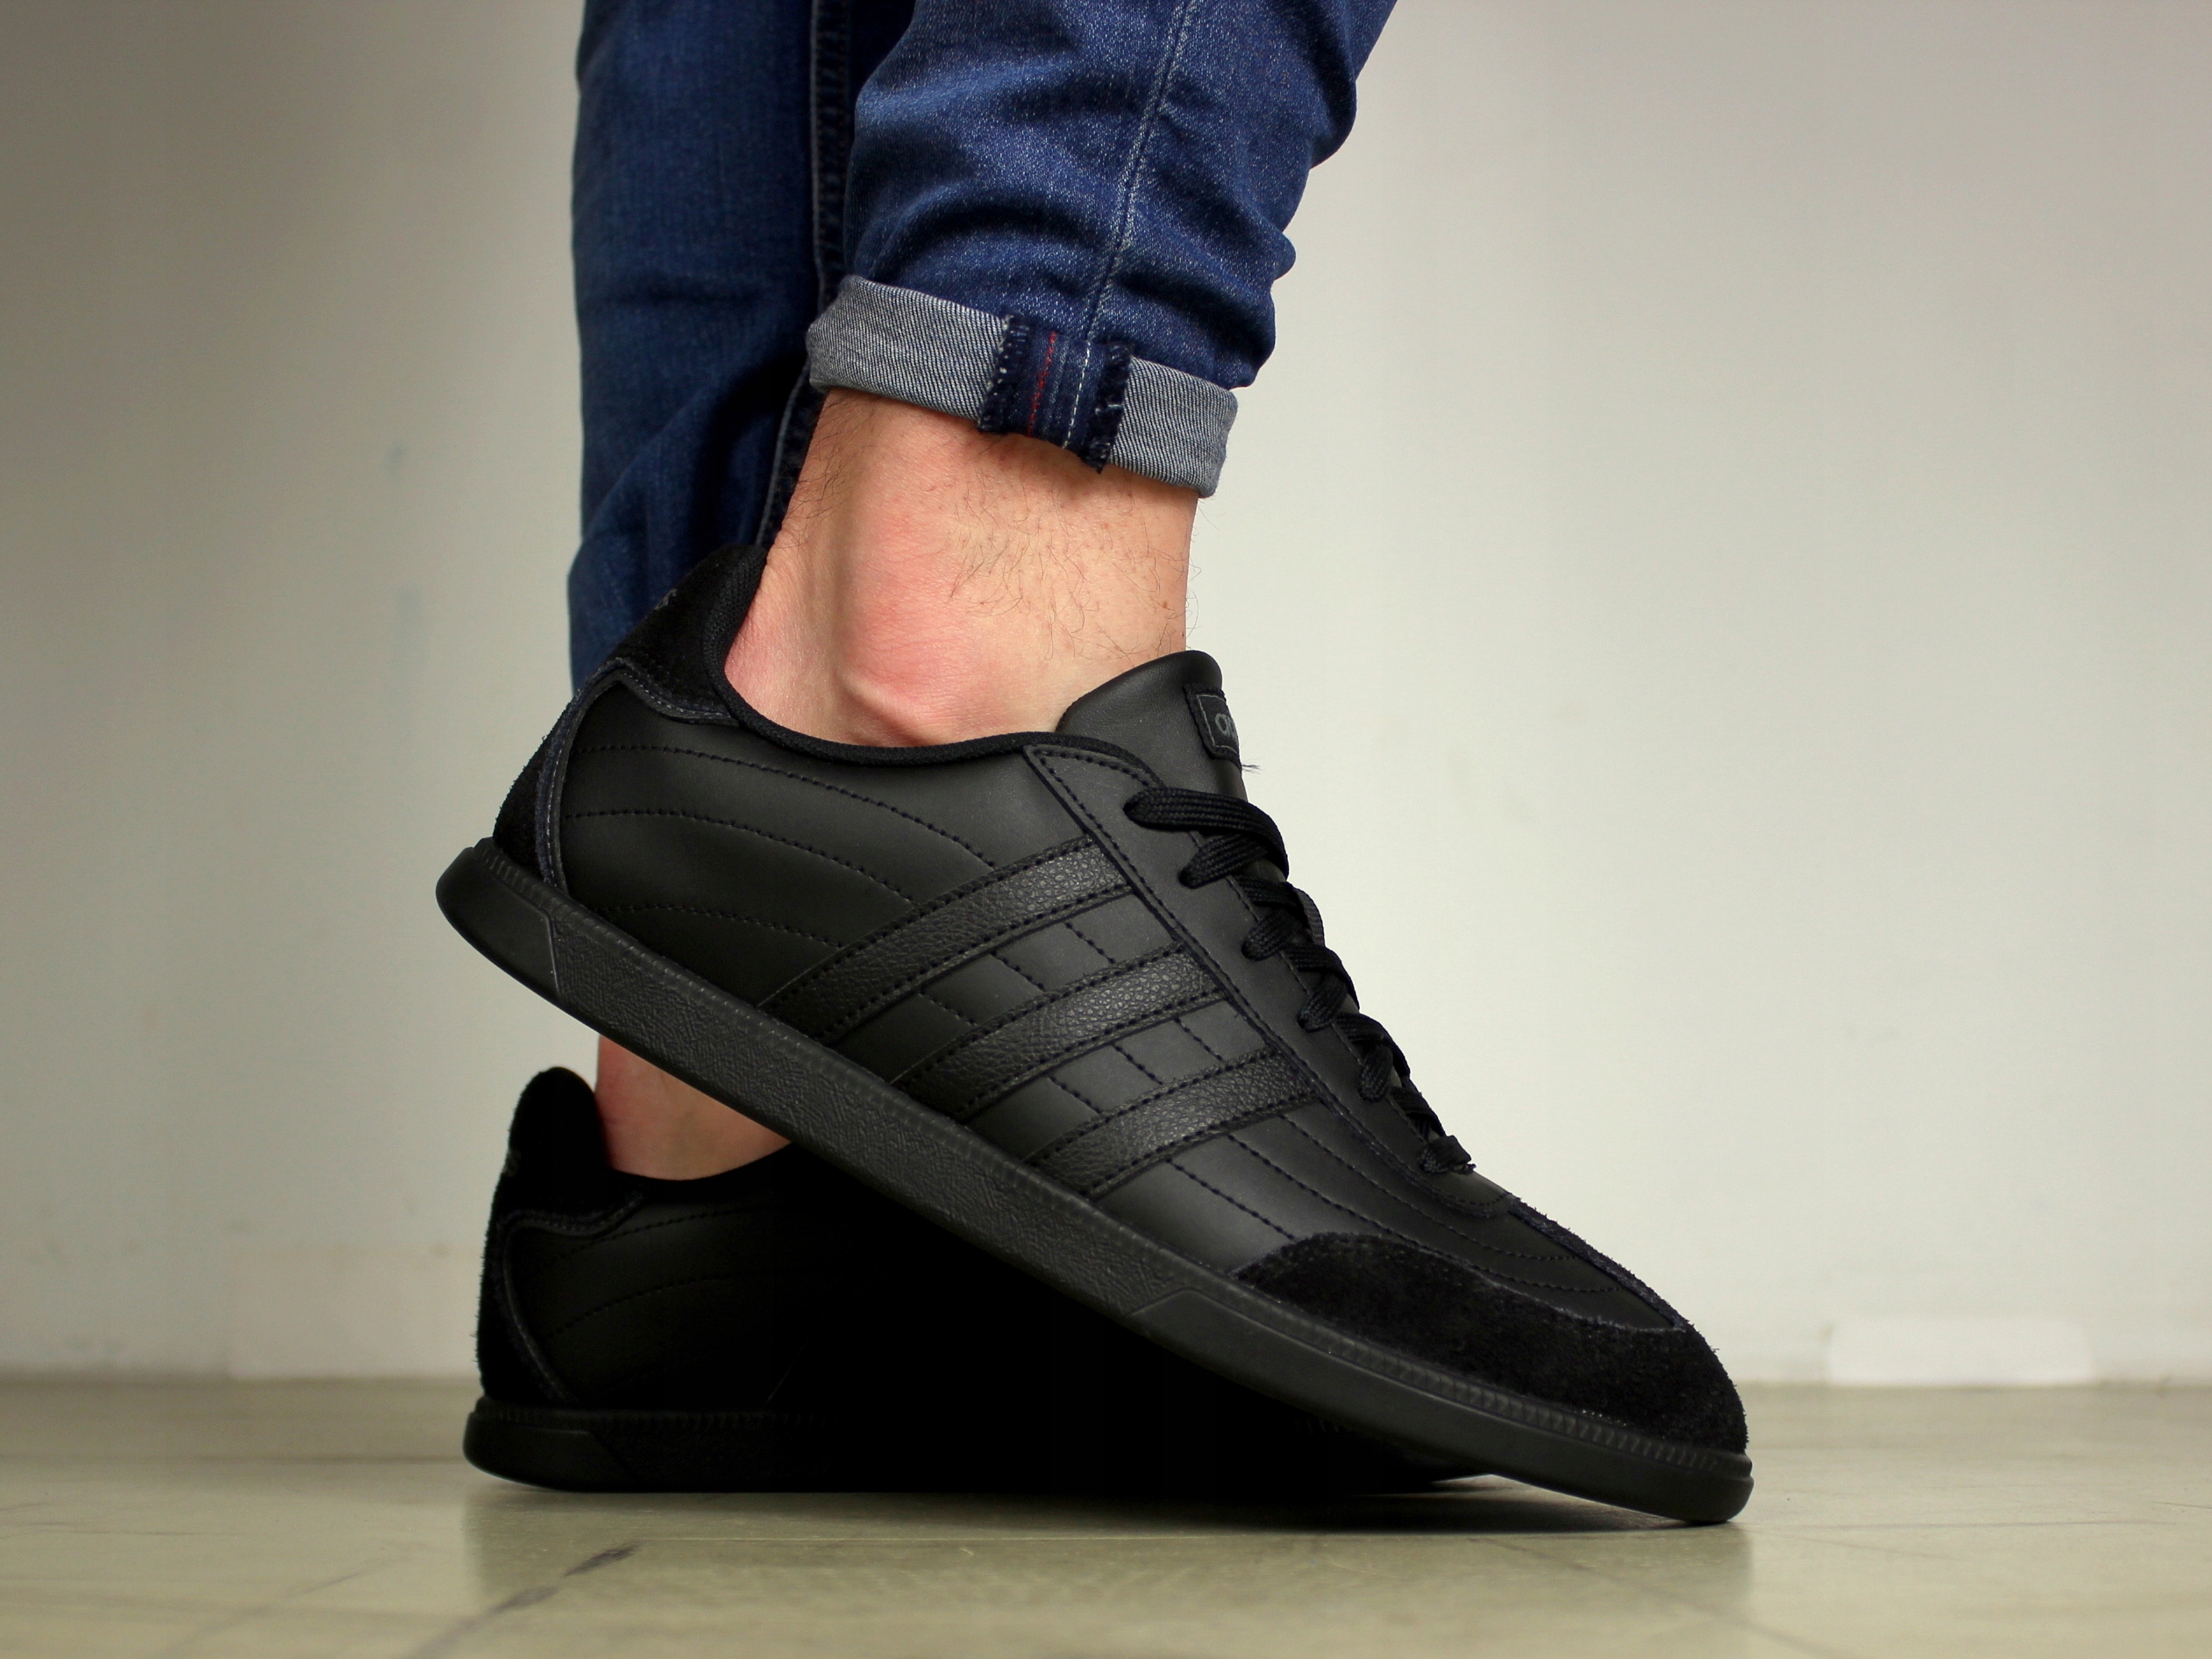 pánská obuv Adidas KŮŽE tenisky černá sportovní za 1307 Kč - Allegro